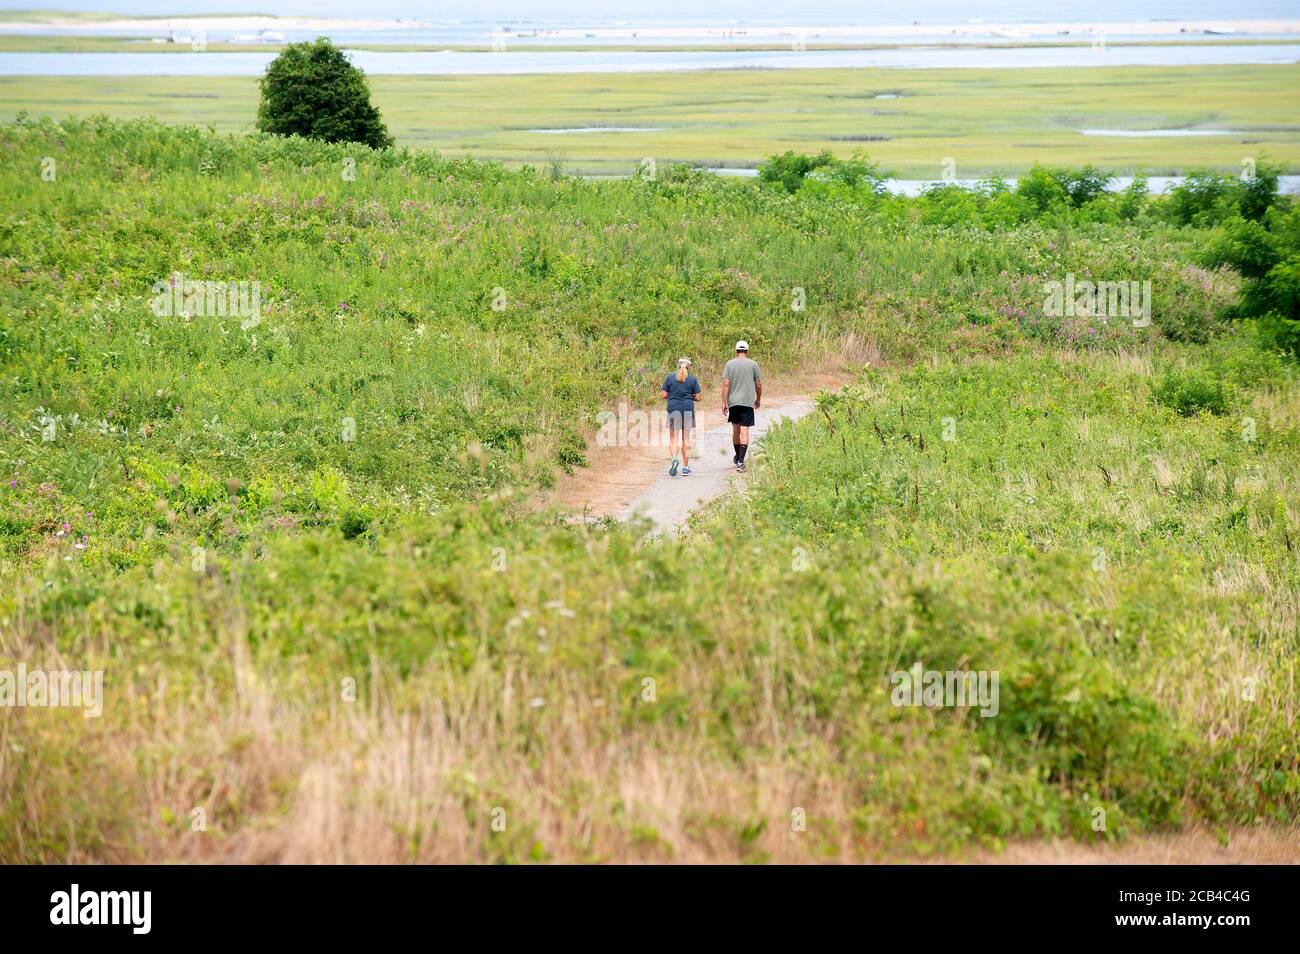 Un couple marchant sur un sentier pendant une pandémie. Cape Cod, Massachusetts, États-Unis Banque D'Images